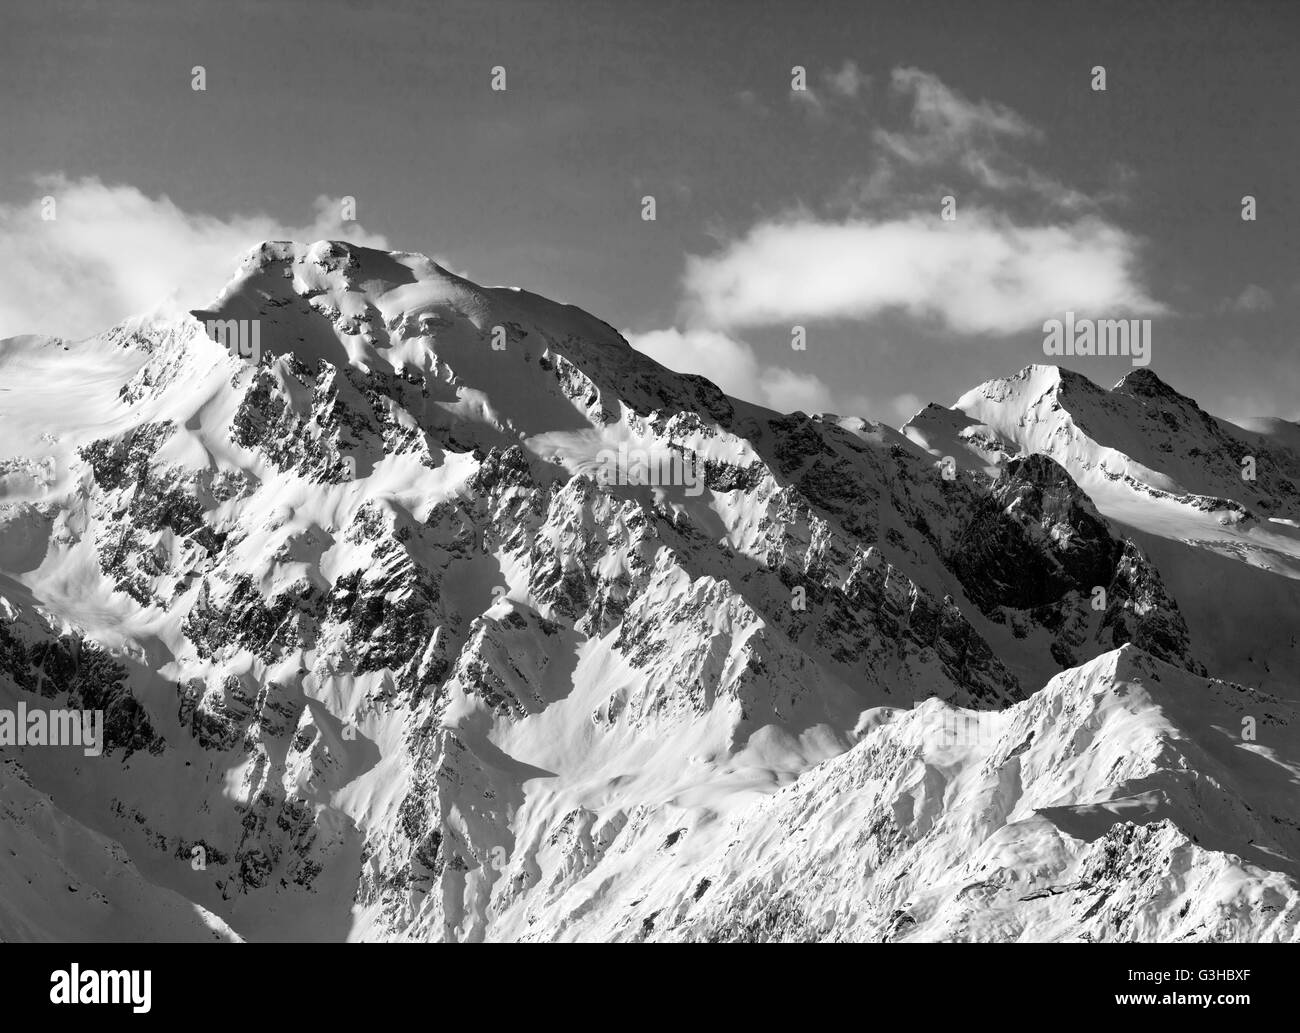 Black and white snowy mountains. Caucasus Mountains. Georgia, region Svaneti. Stock Photo